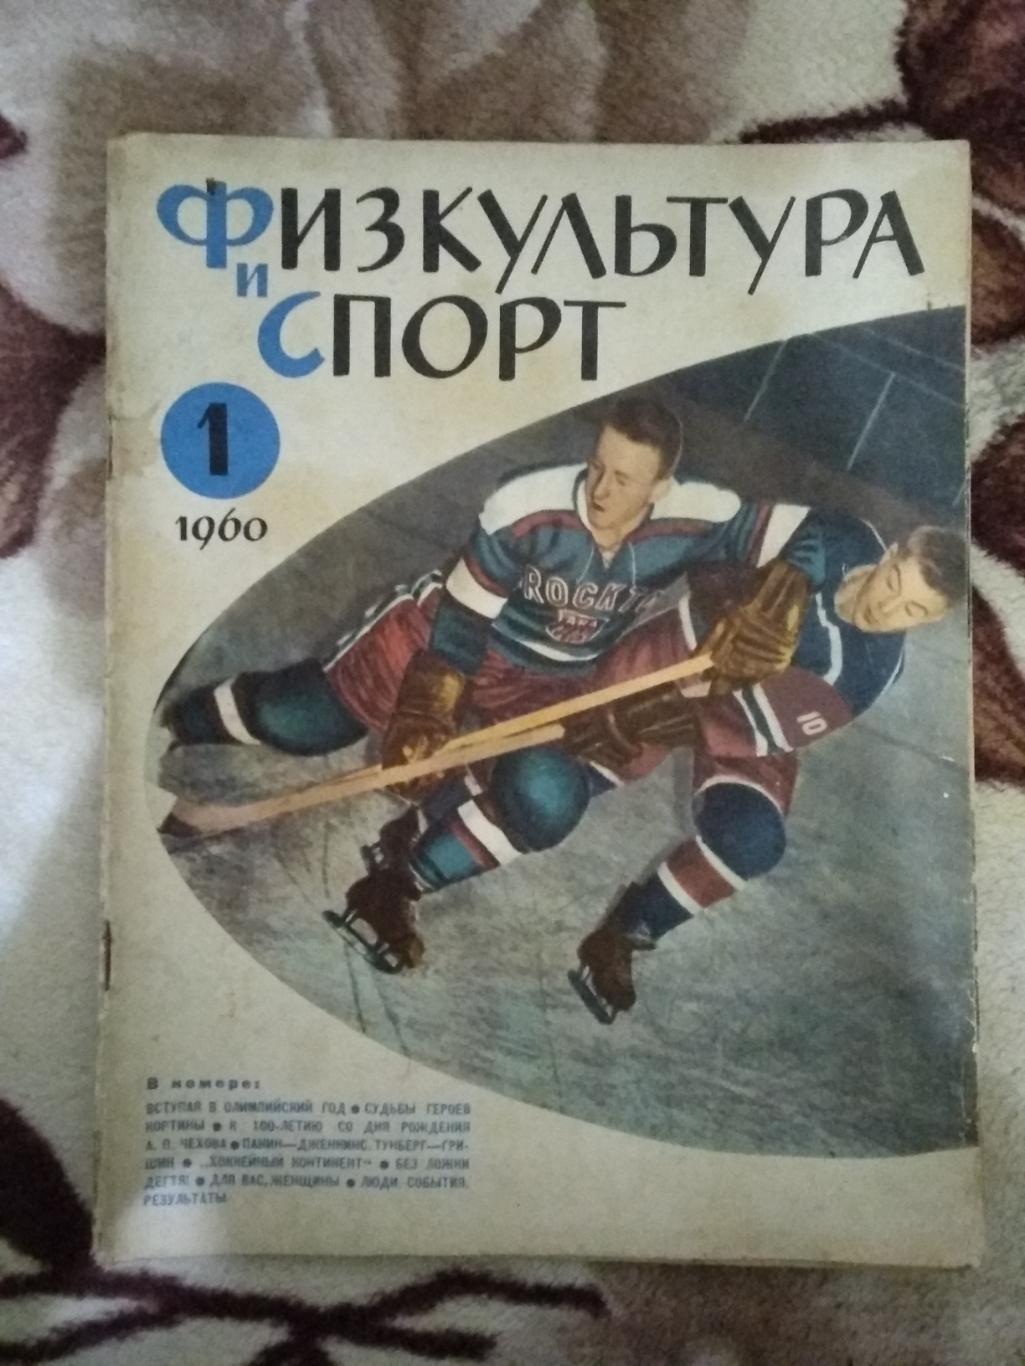 Журнал.Физкультура и спорт № 1 1960 г. (ФиС).